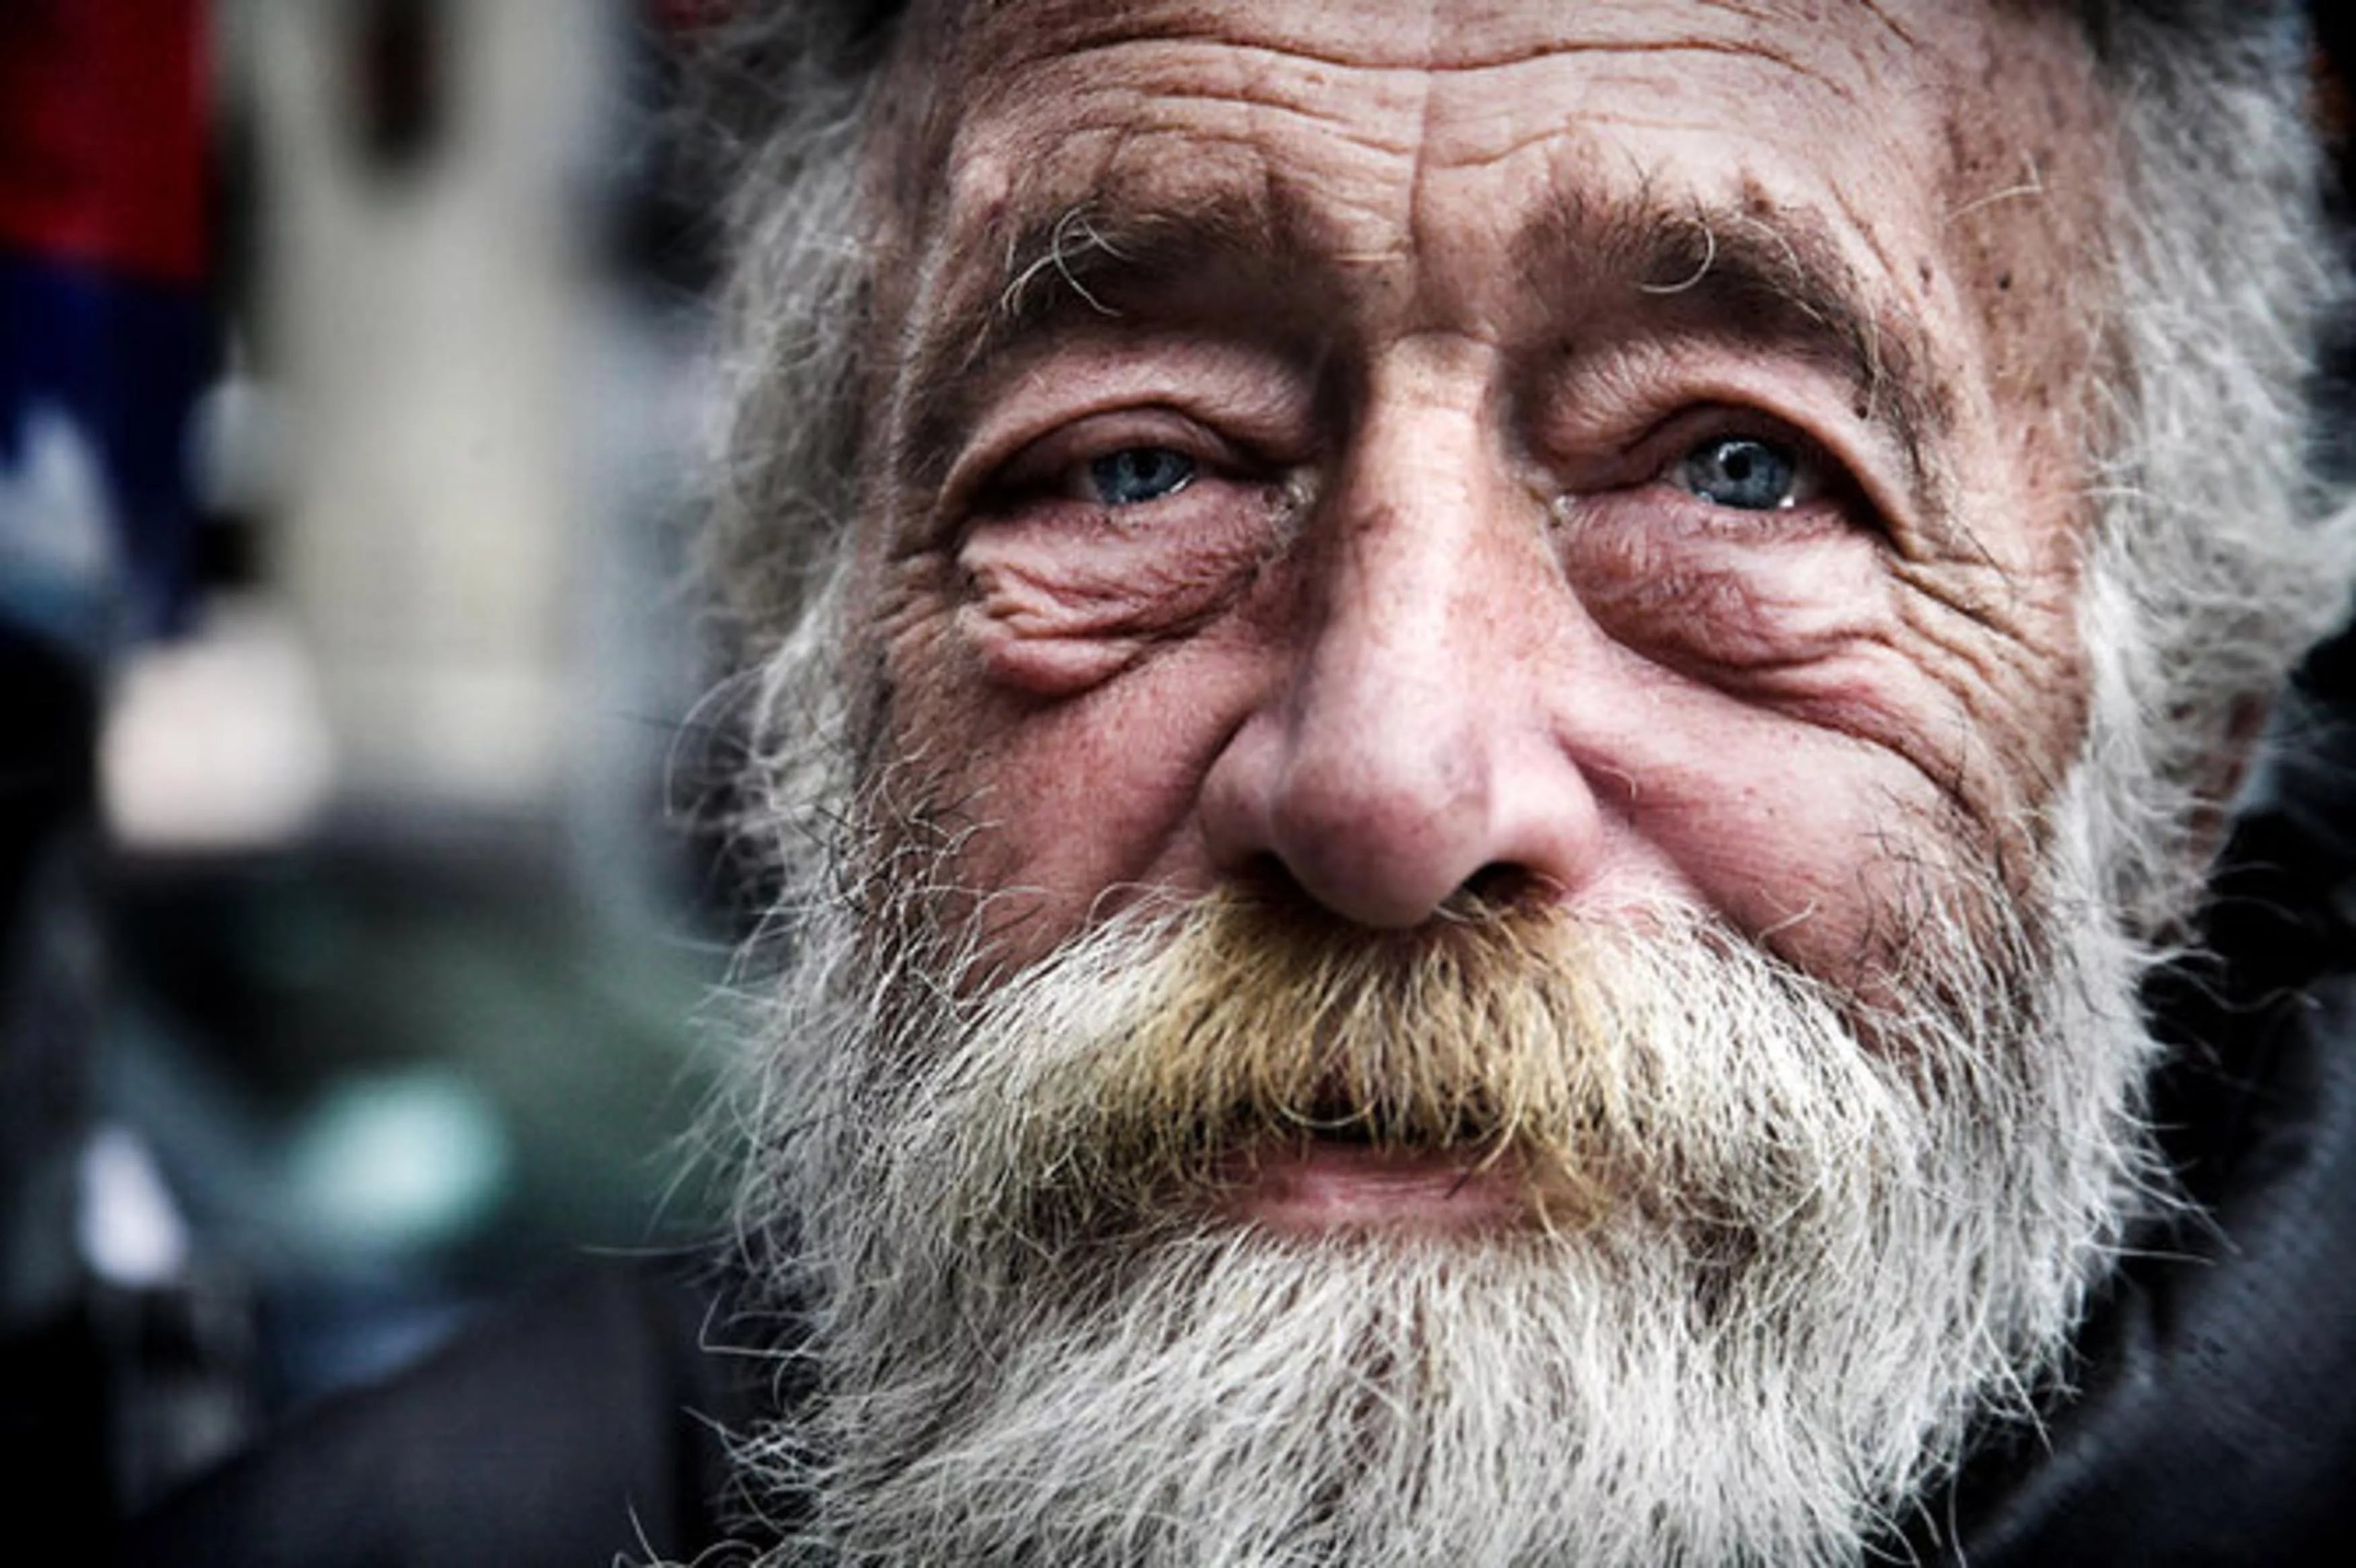 Old man new. Старик. Бездомный старик. Добрые глаза. Старик бомж.